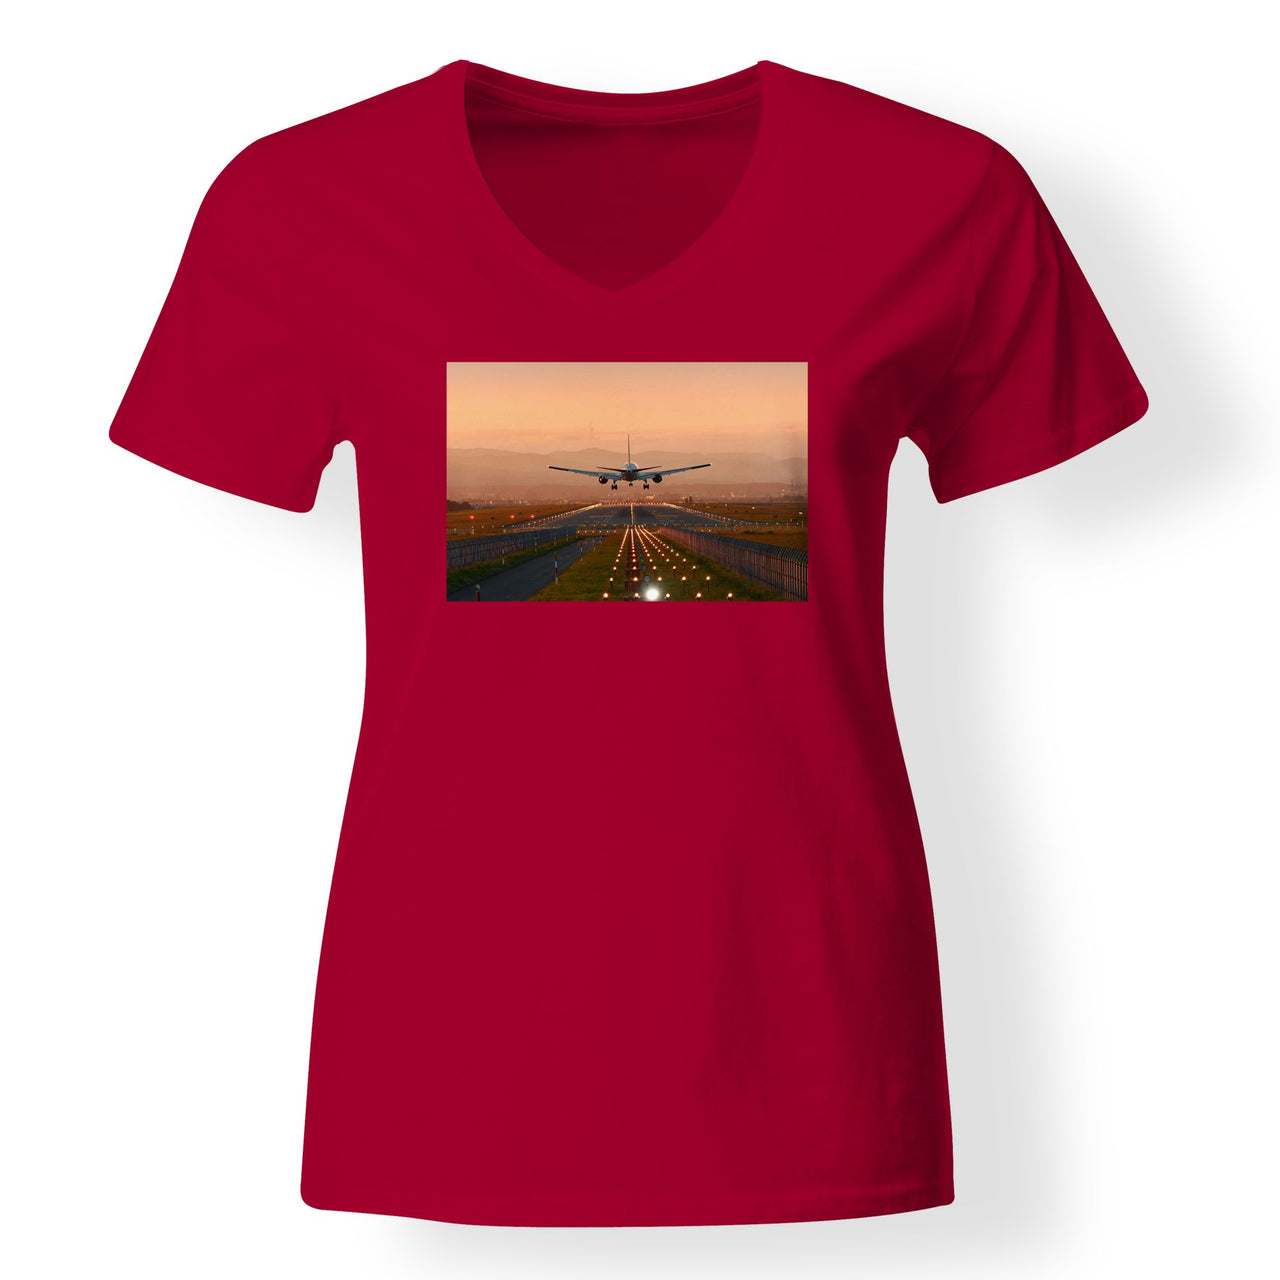 Super Cool Landing During Sunset Designed V-Neck T-Shirts